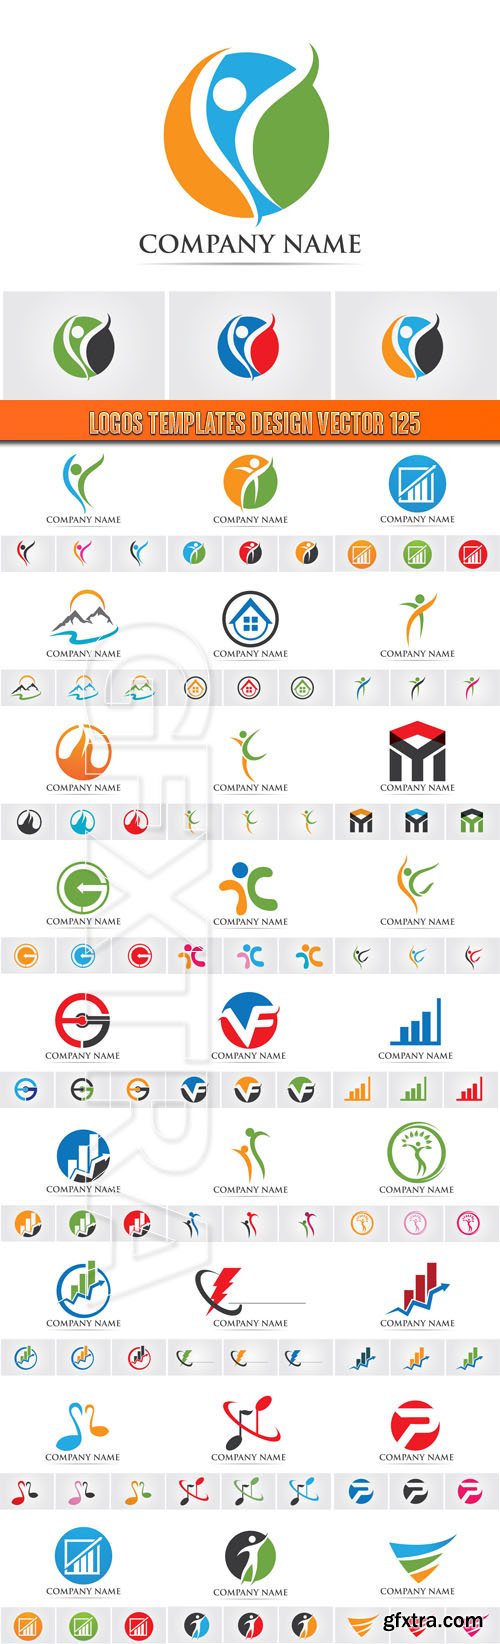 Logos Templates Design Vector 125